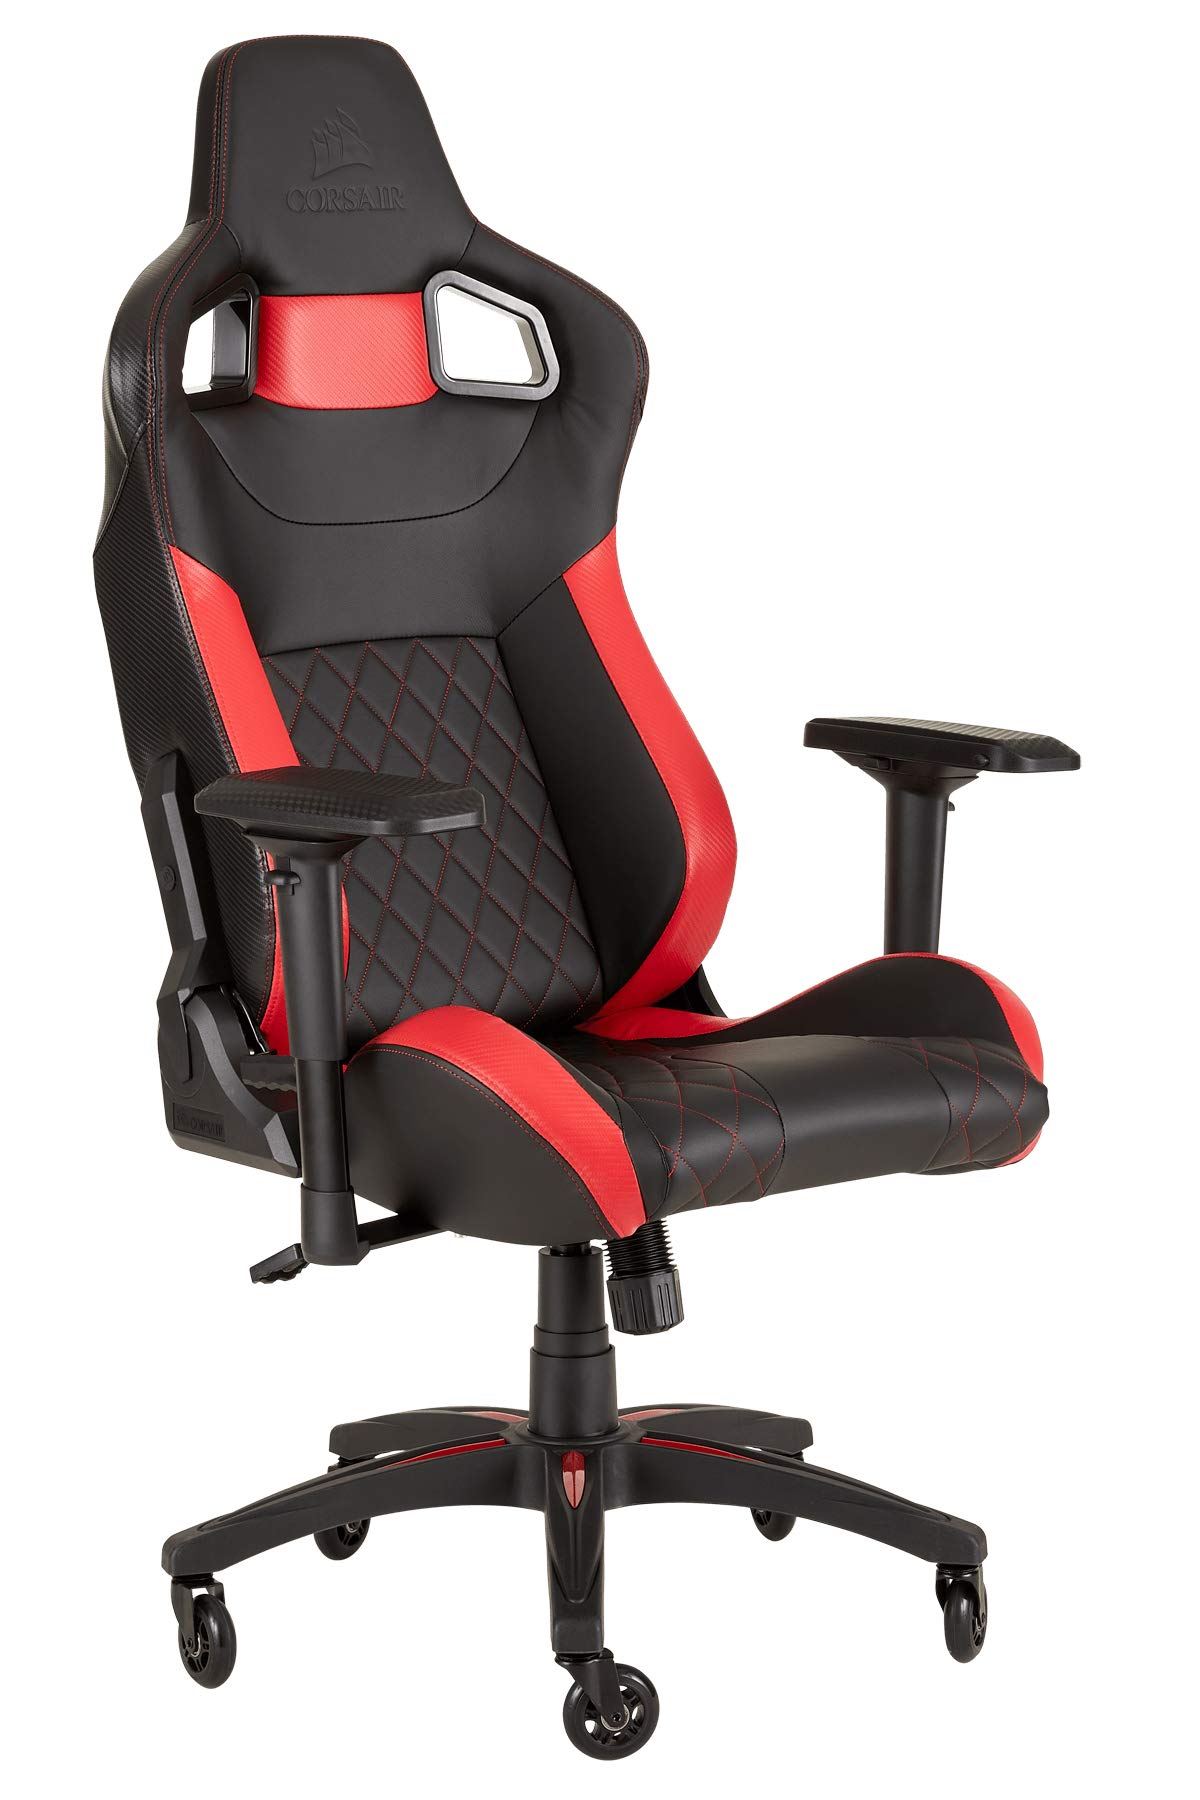 Corsair T1 Race - Kunstleder Gaming Rennsport Stuhl (Einfache Montage, Ergonomisch Schwenkbar, Verstellbare Sitzhöhe & 4D Armlehnen, Komfortable breite Sitzfläche mit hoher Rückenlehne) Rot